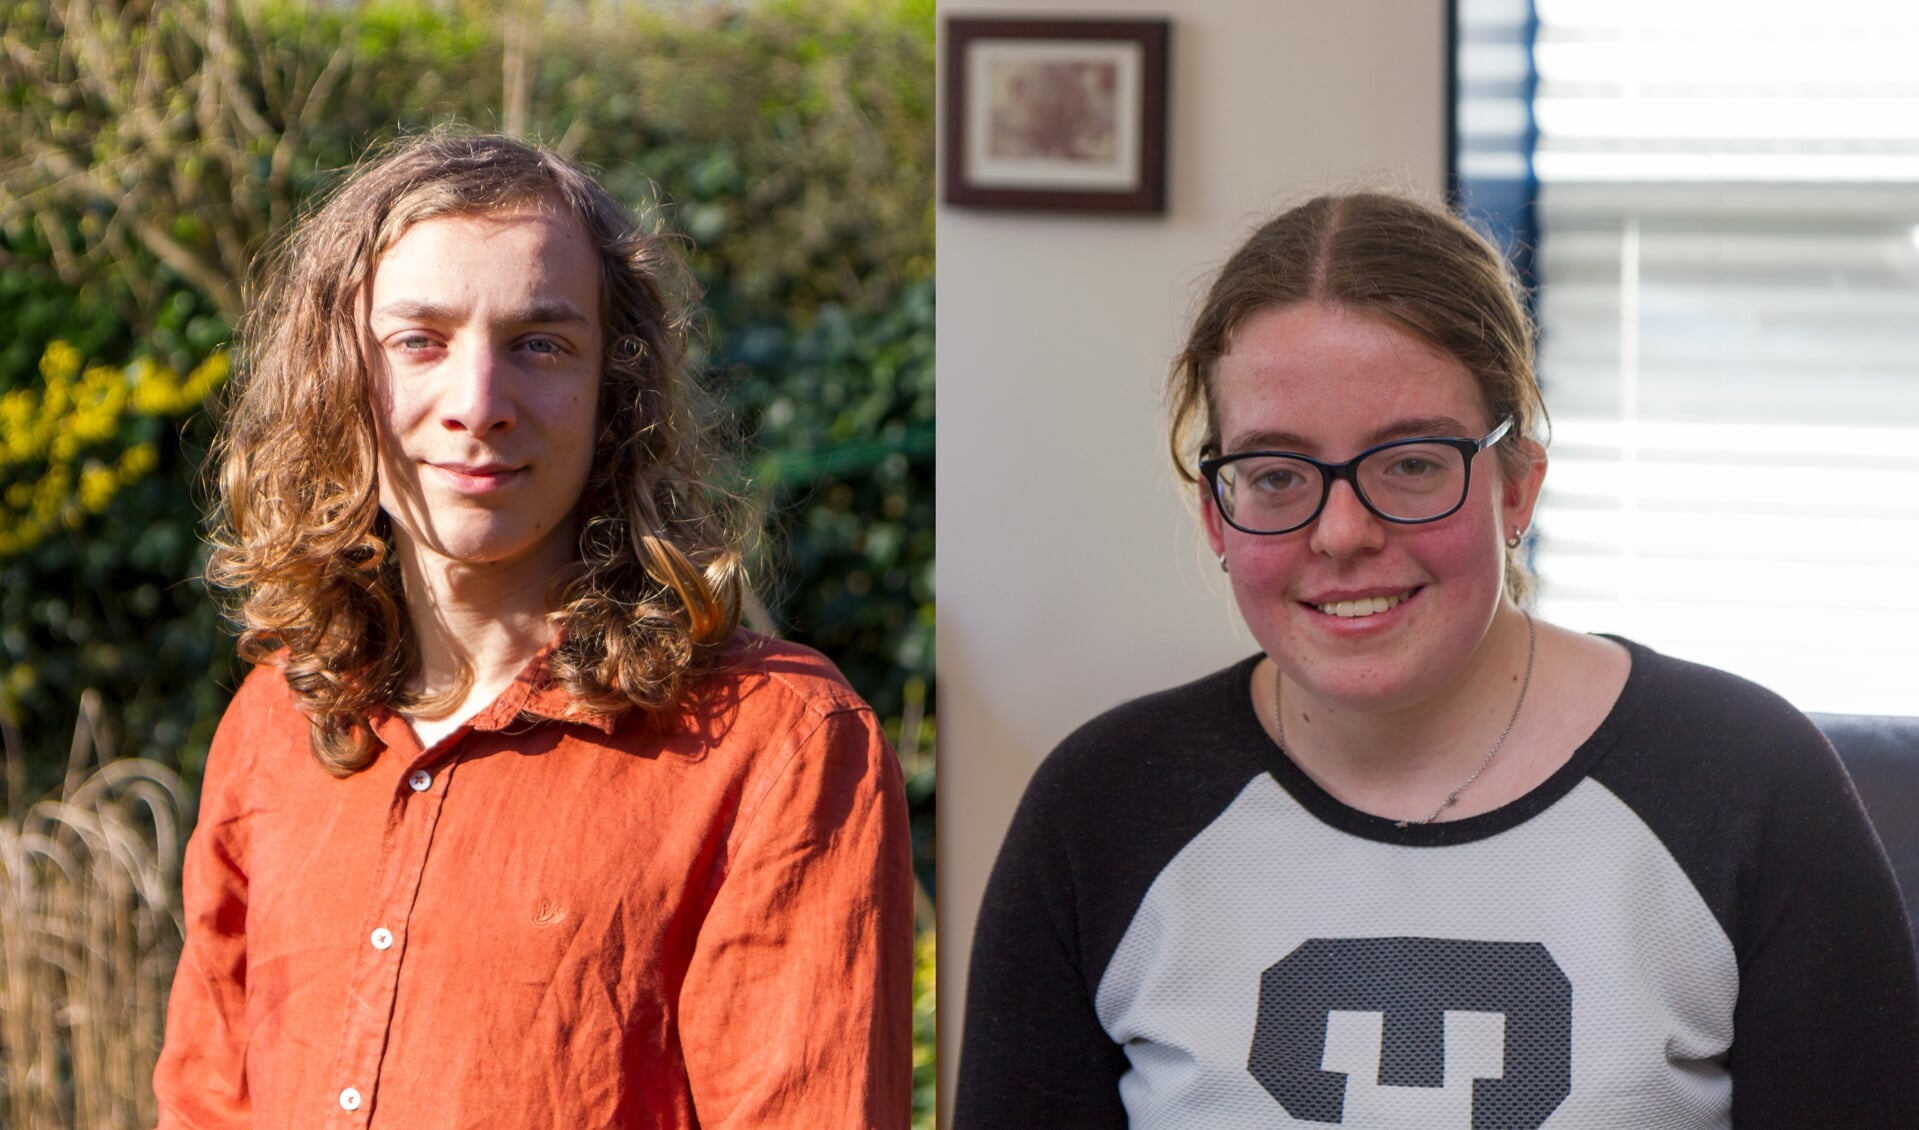 Viggo Rügebregt (18) uit Burgum en Doreen Turkstra (21) uit Garyp hebben beiden een autismespectrumstoornis.